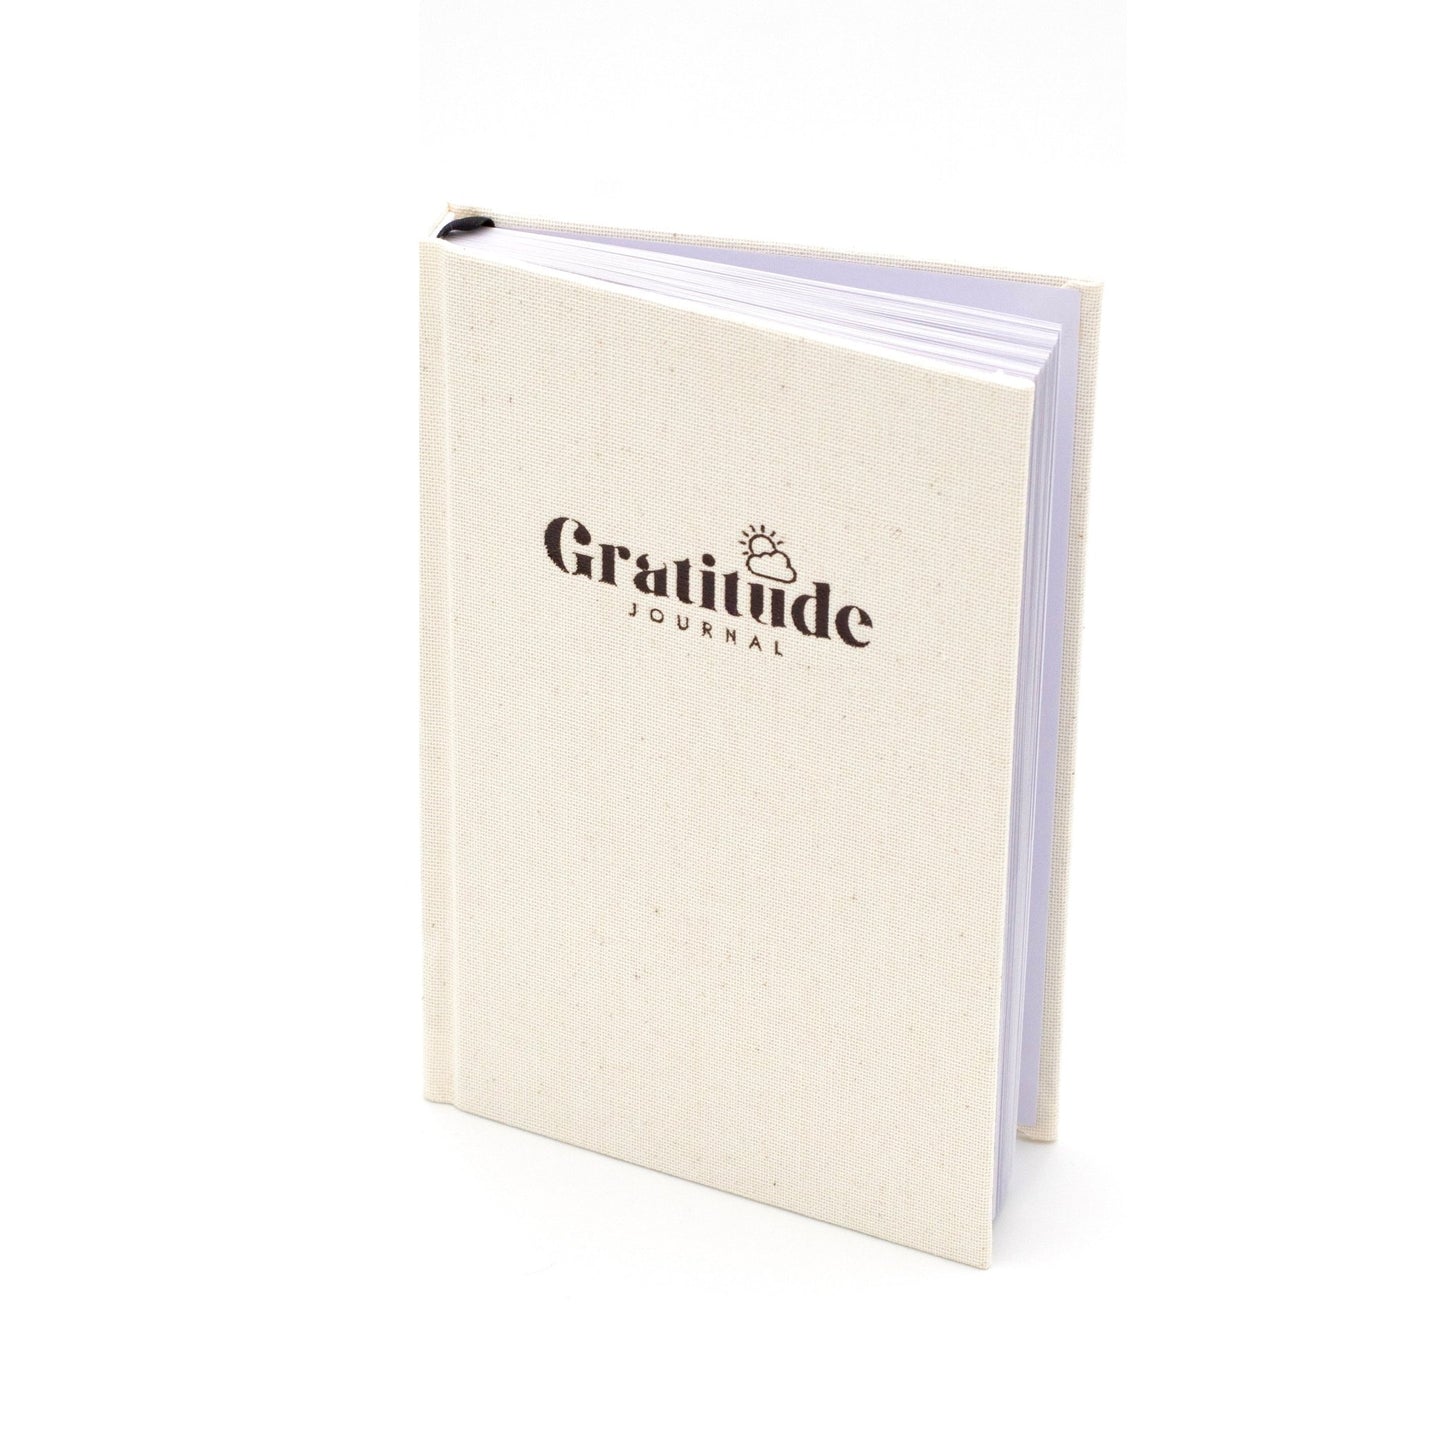 Gratitude Journal For Women — The White Lime